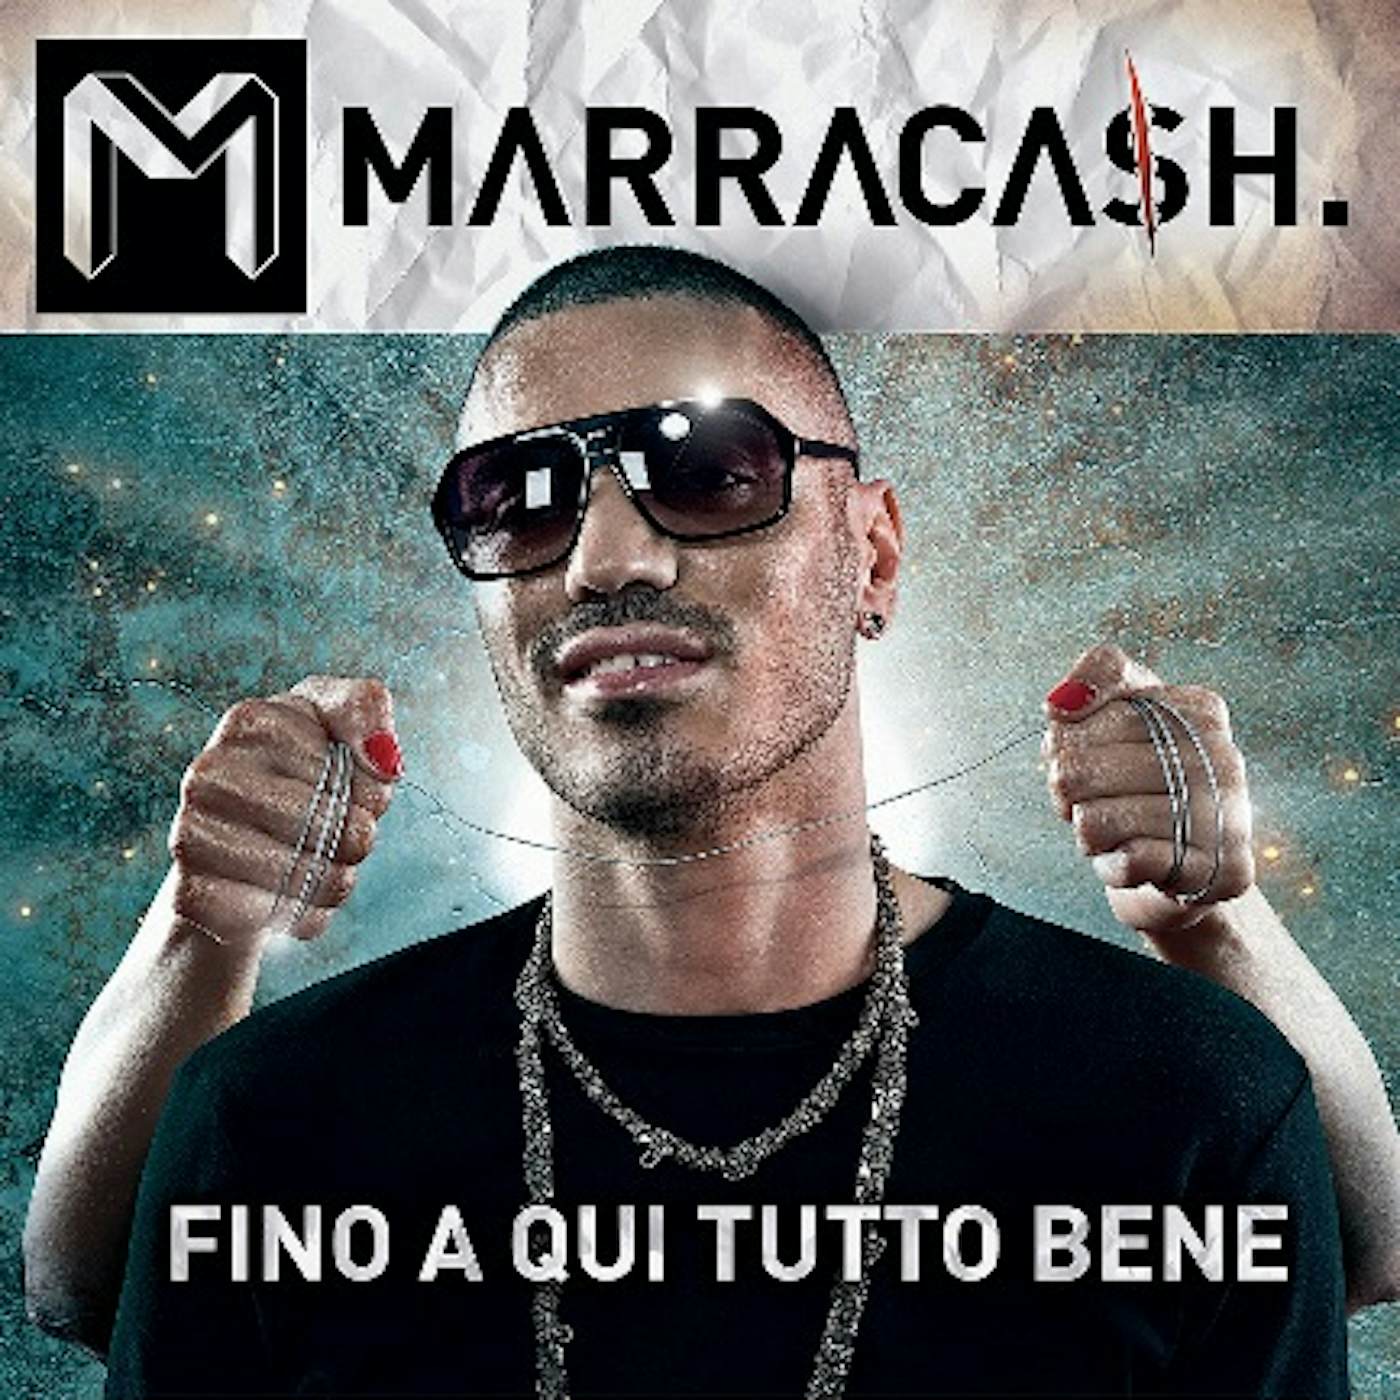 Marracash Fino A Qui Tutto Bene Vinyl Record